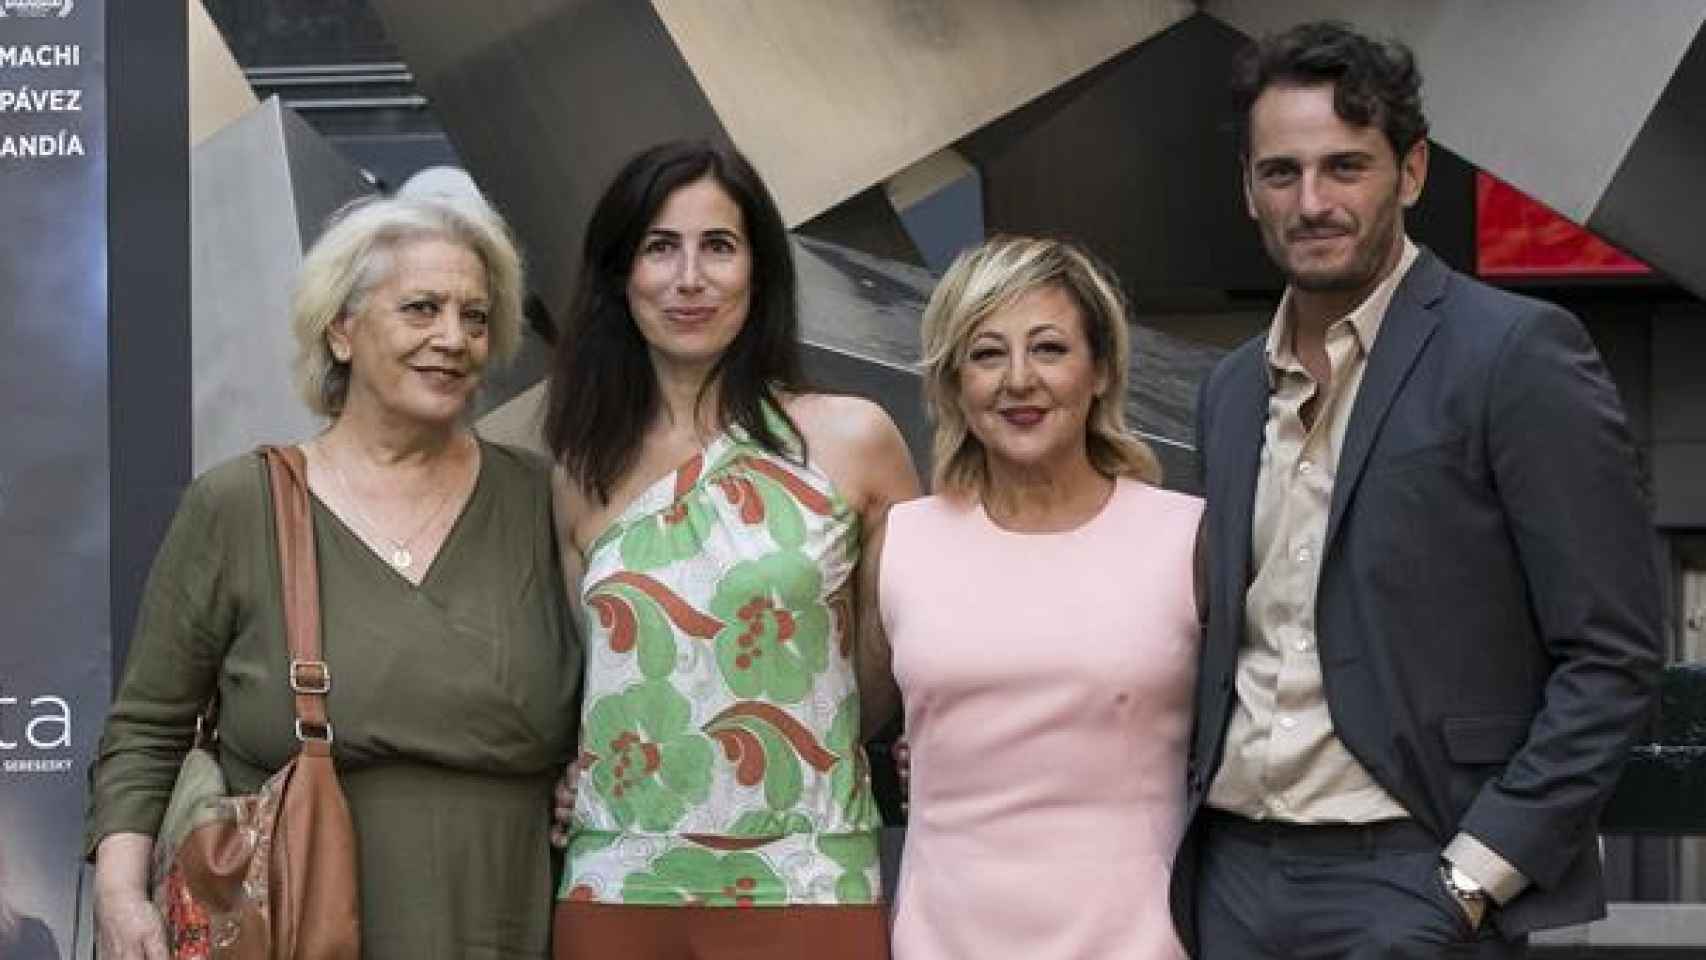 Terele Pávez, Carmen Machi, Marina Seresesky y Asier Etxeandía presentan La puerta abierta.